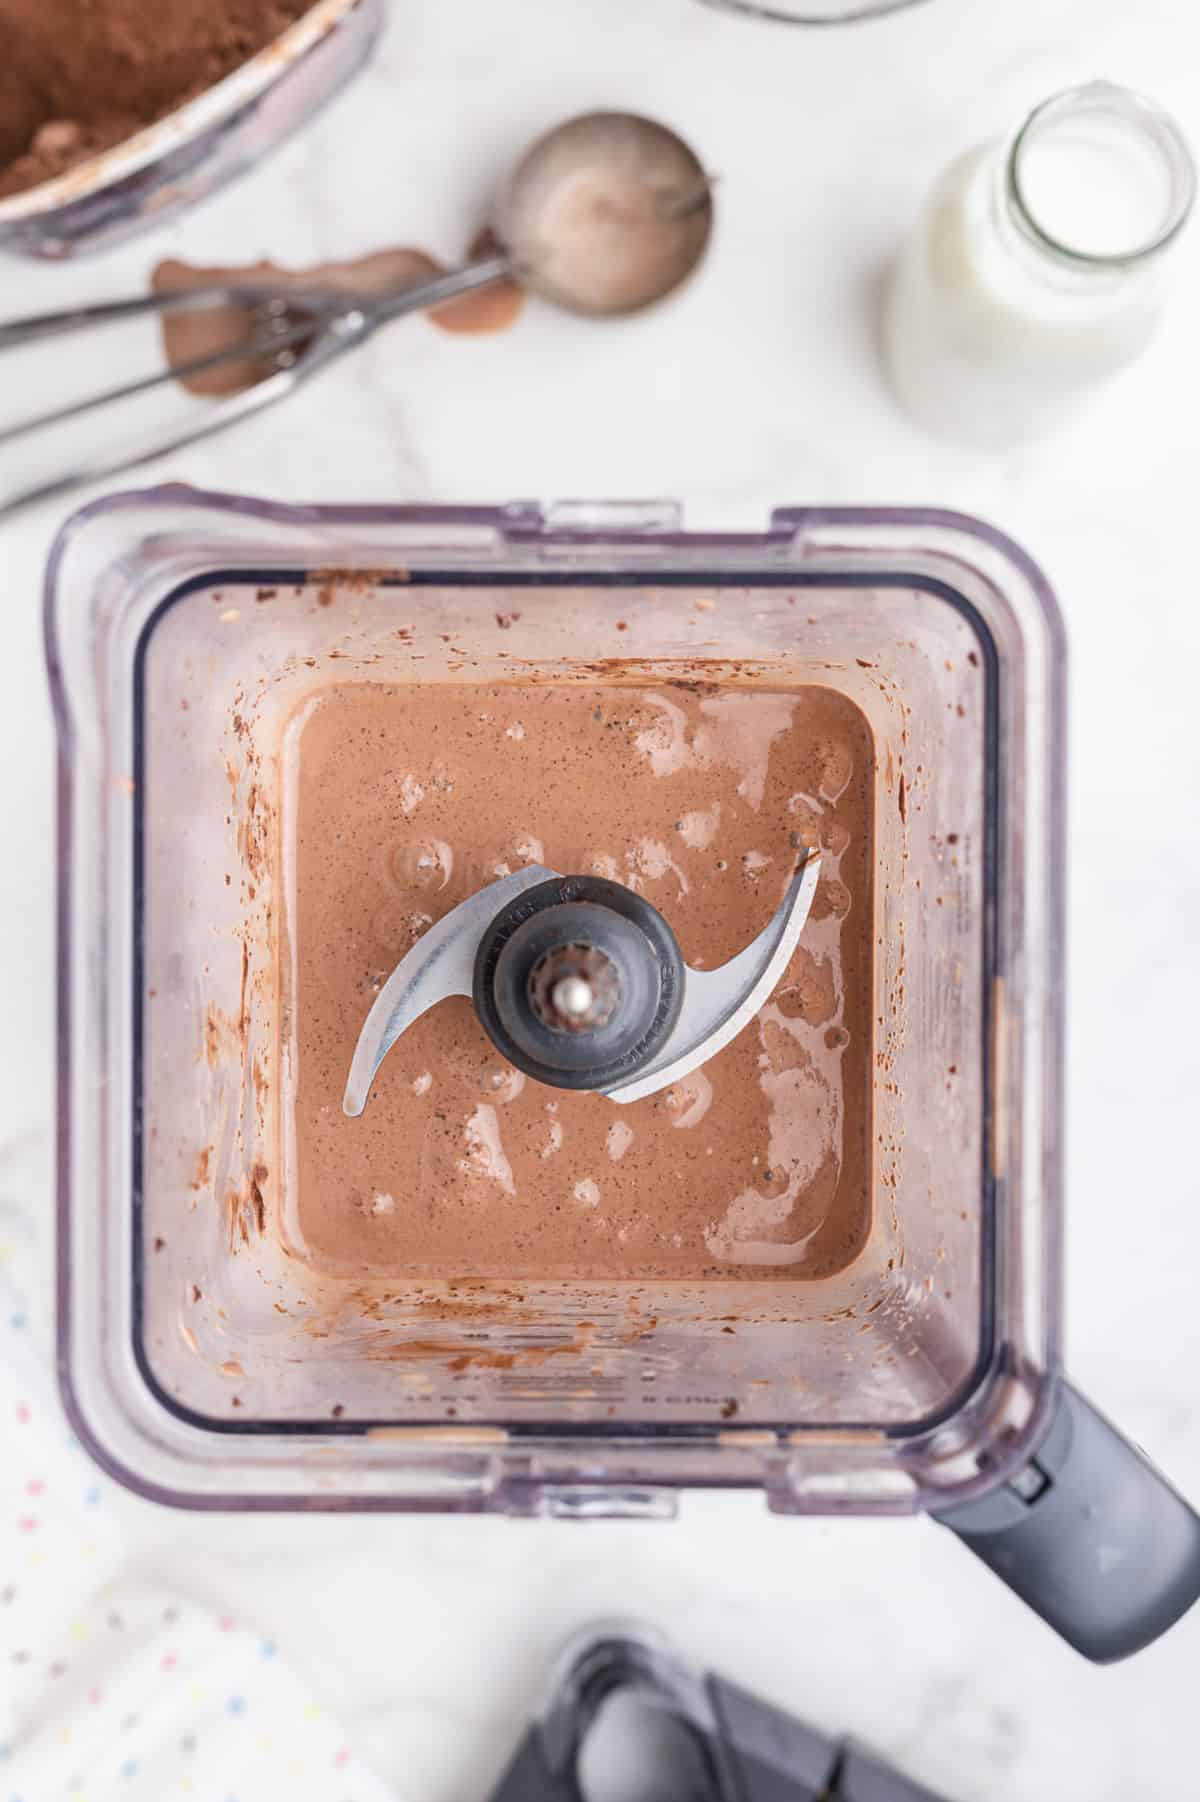 Chocolate milkshake in a blender.